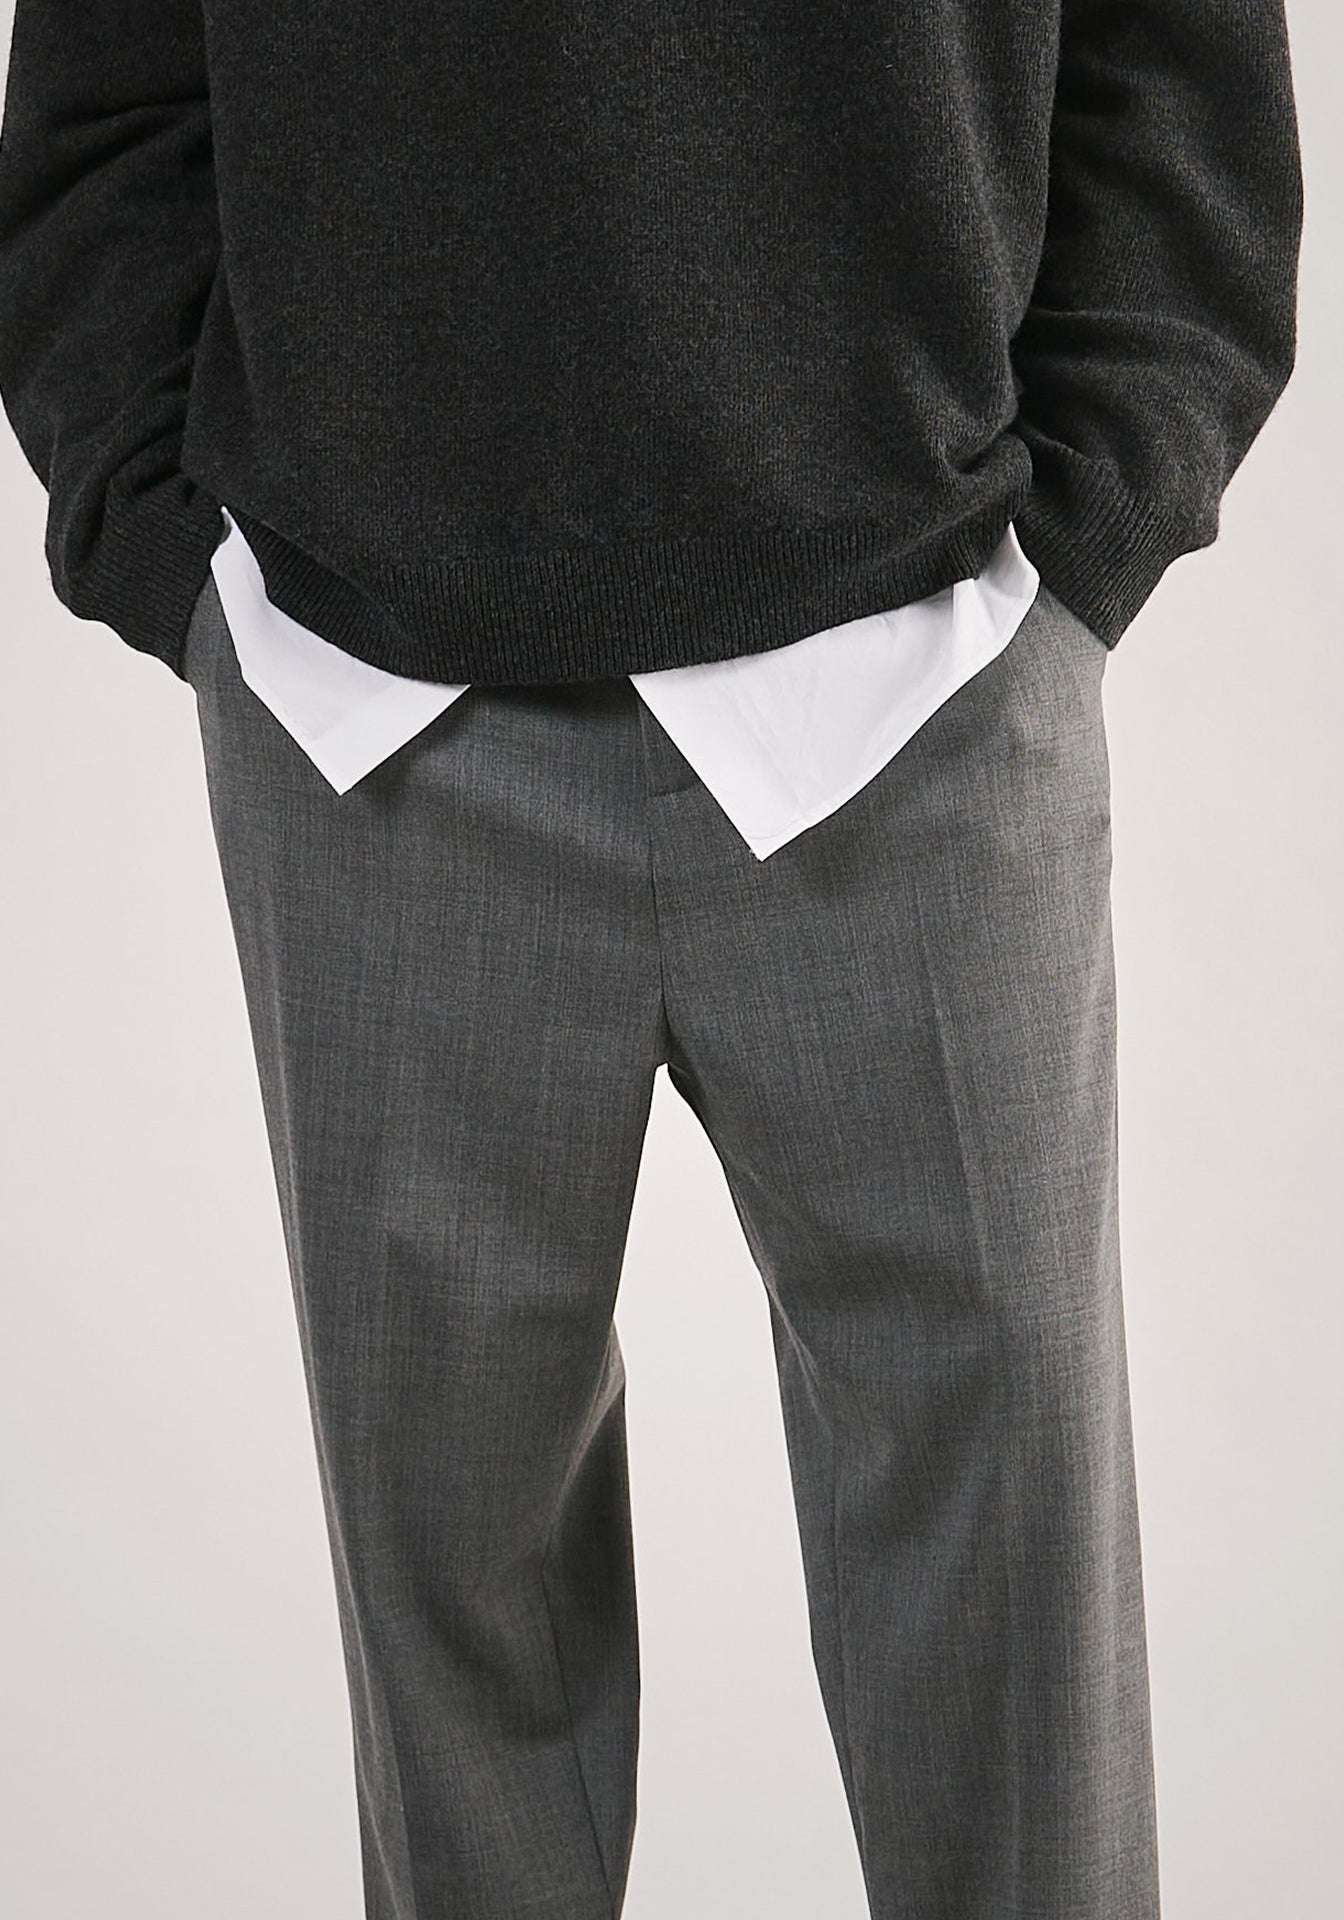 NWT Lou & Grey Tie Waist Linen Pants in Deep Dark Grey - XS S L - $80